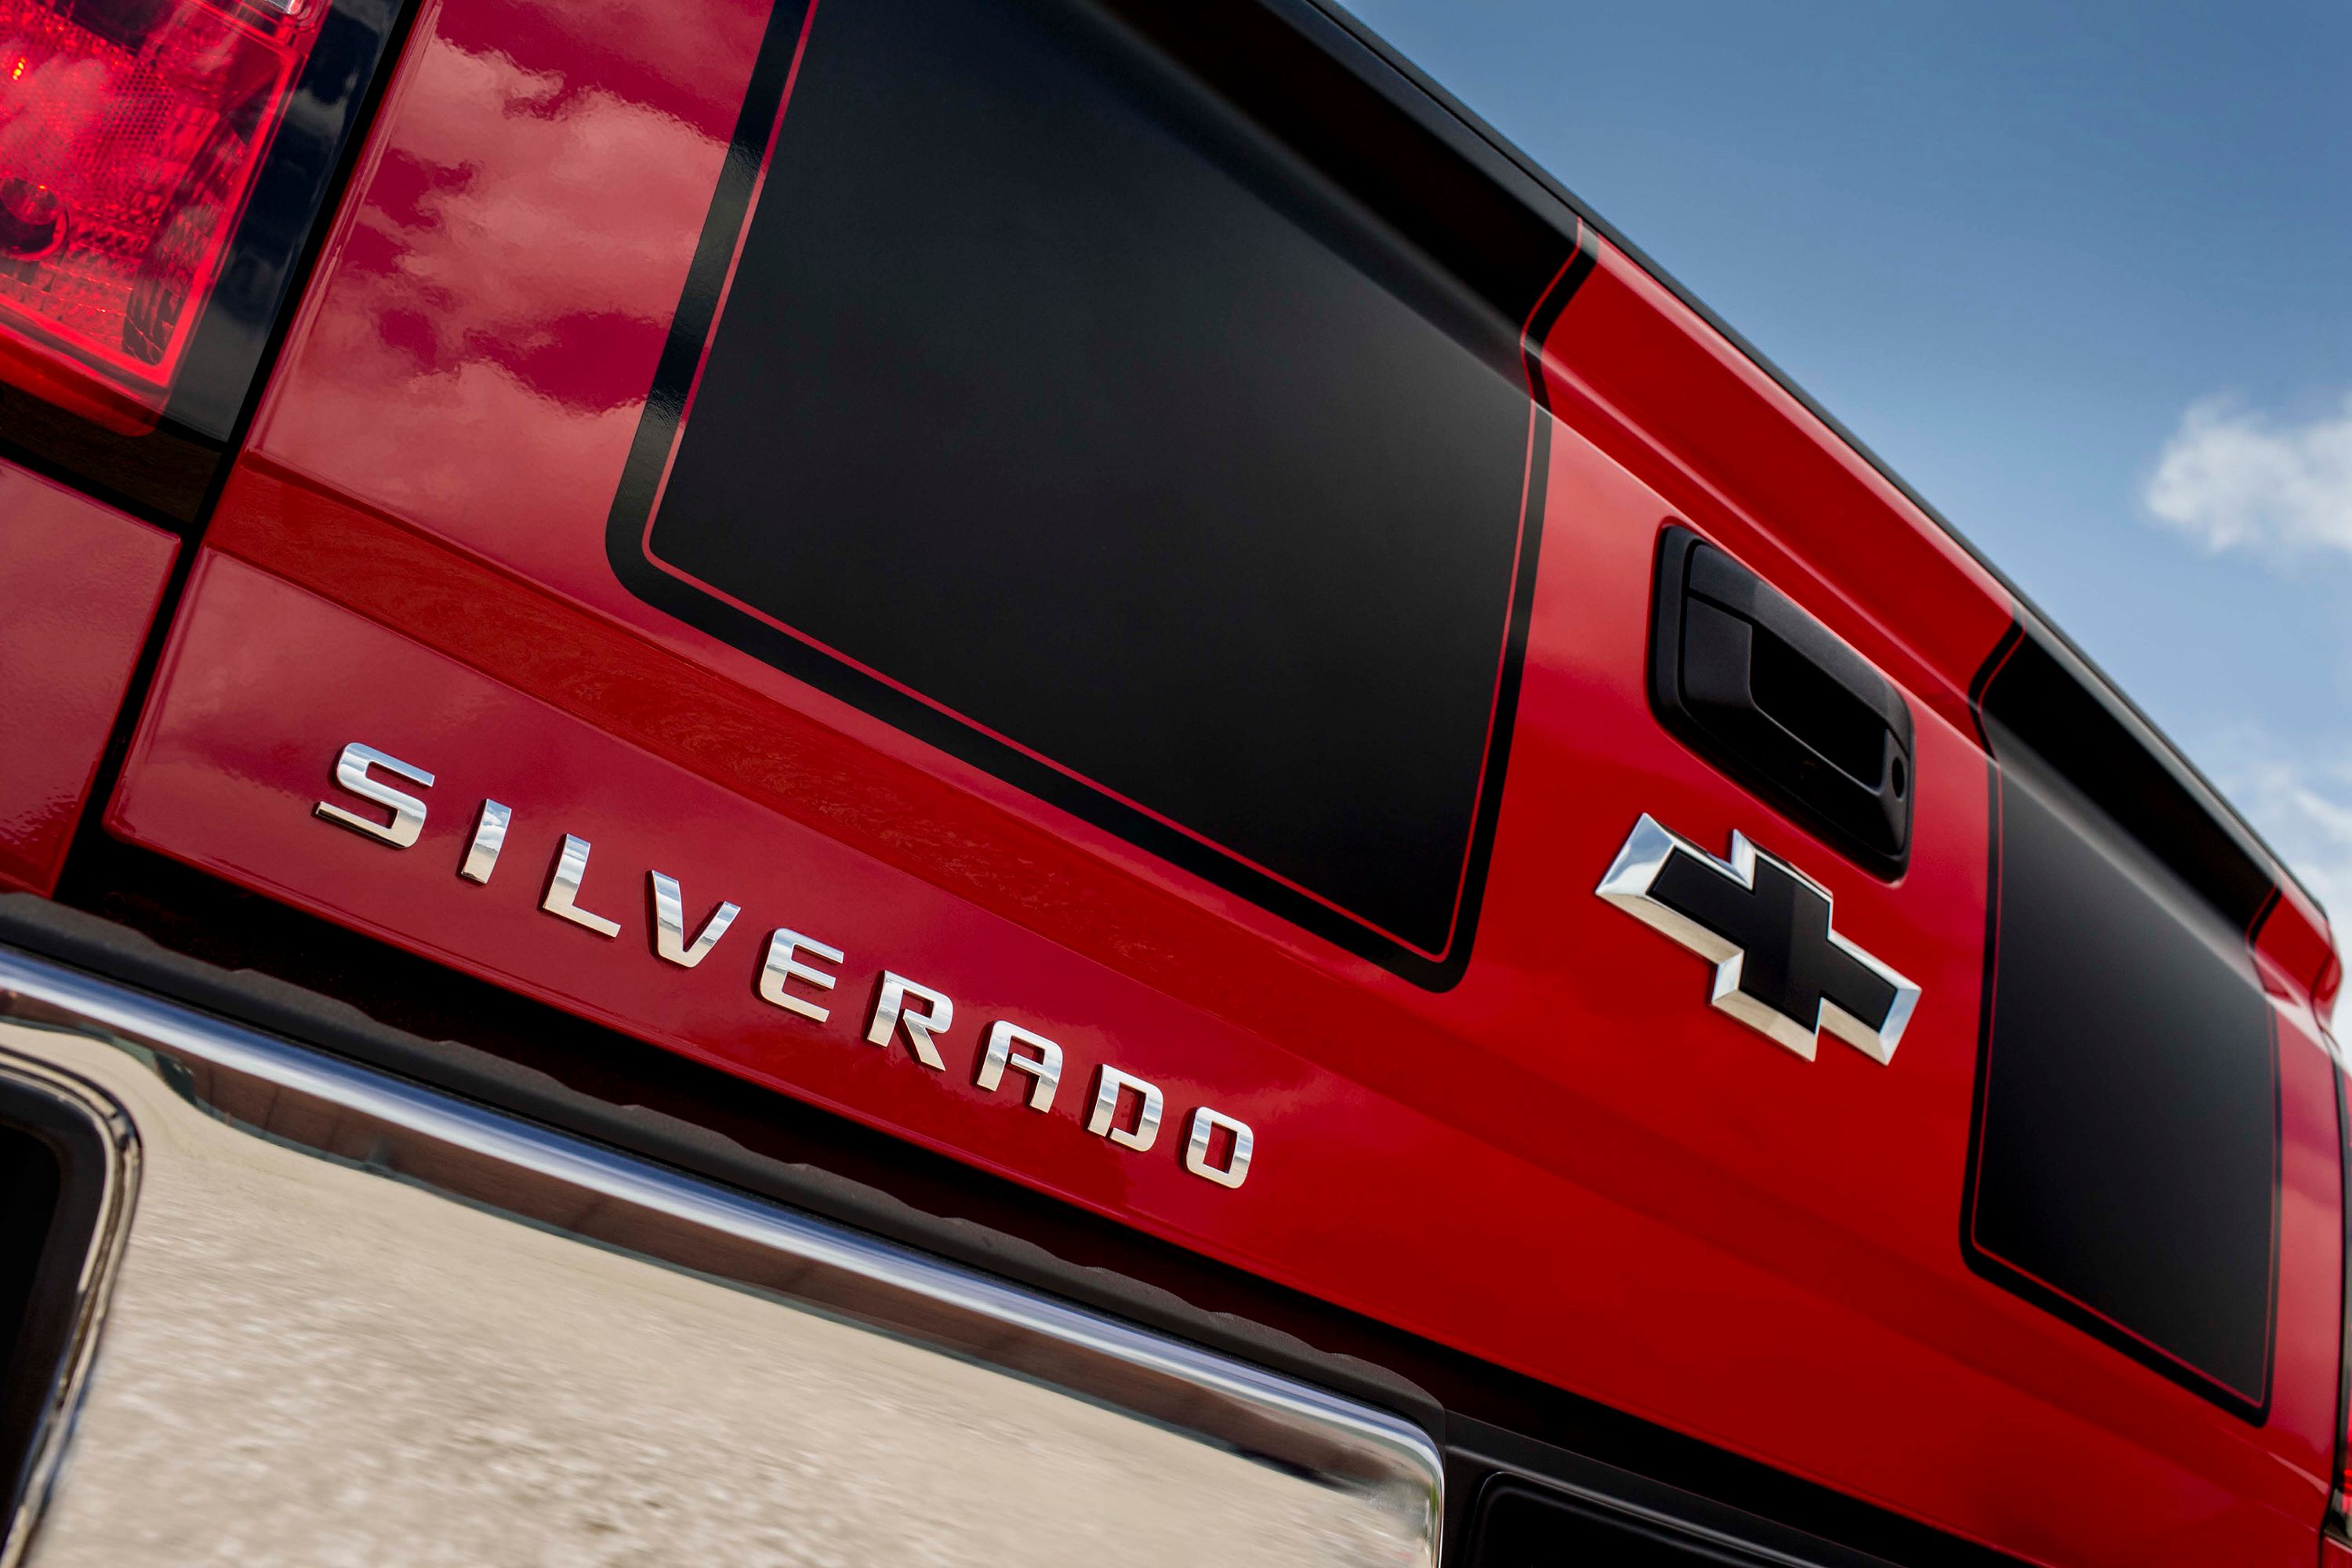 2014 Chevrolet Silverado Rally Edition